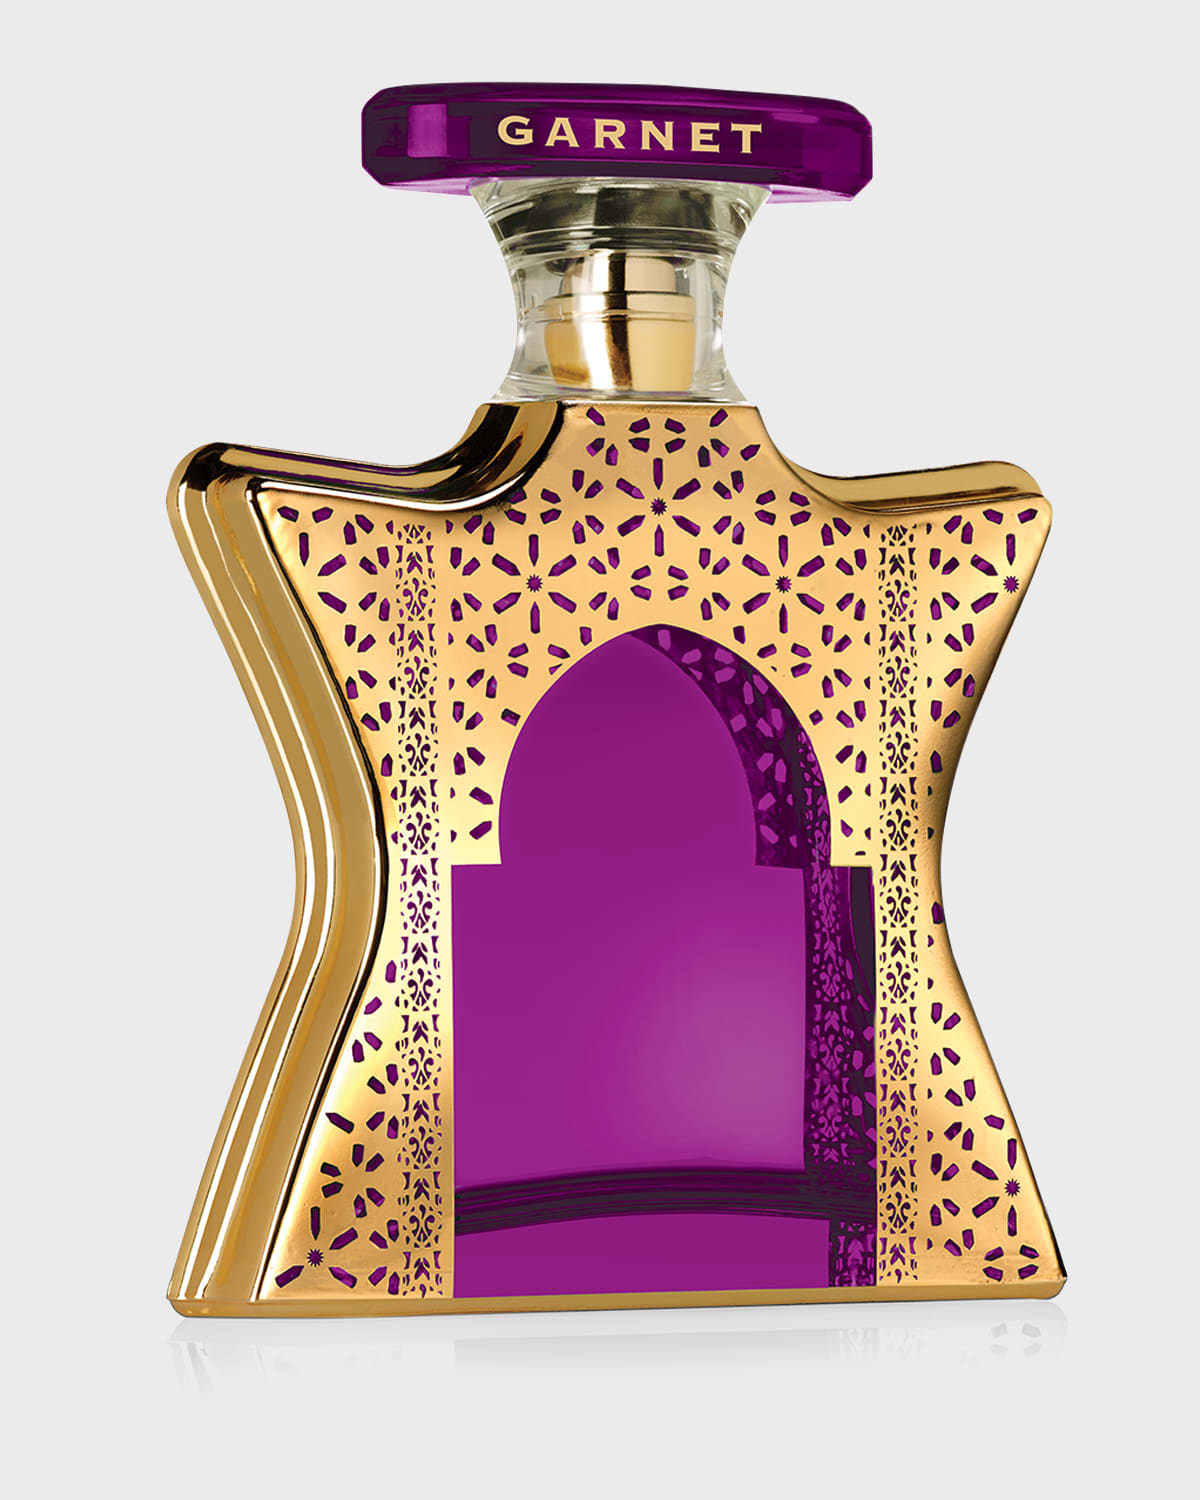 3.4 oz. Dubai Garnet Eau de Parfum